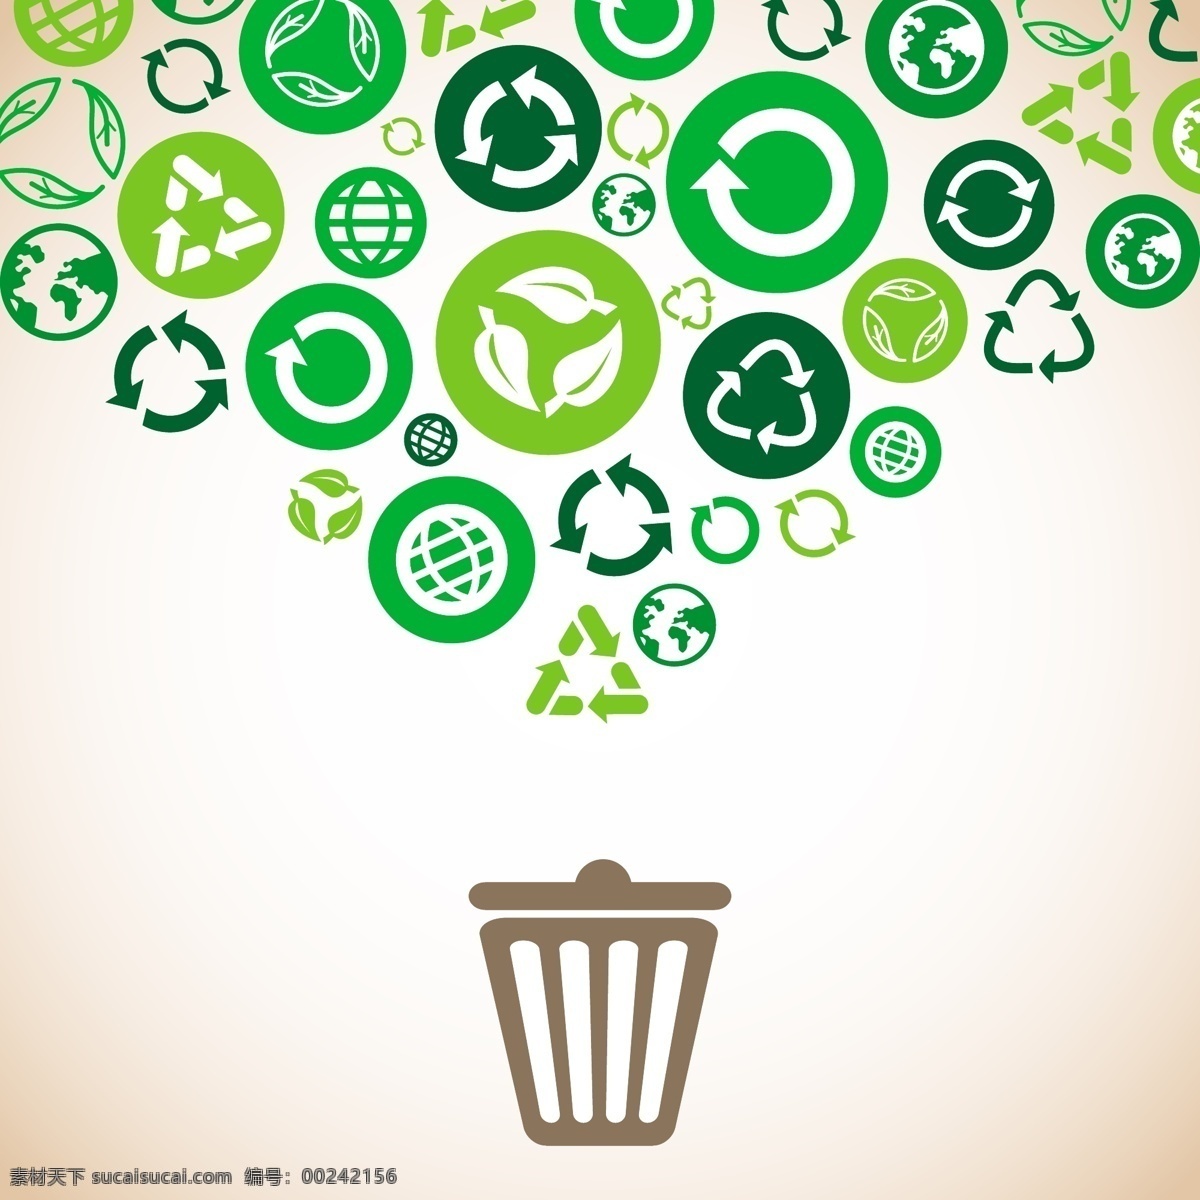 绿色环保 生态环保 循环图标 可回收图标 垃圾桶 垃圾箱 回收站 循环利用图标 循环回收图标 绿色环保图标 绿色生态环保 环保图标 主题图标 绿色生态图标 图标 绿色 环保 节能 eco 箭头 可回收 可循环